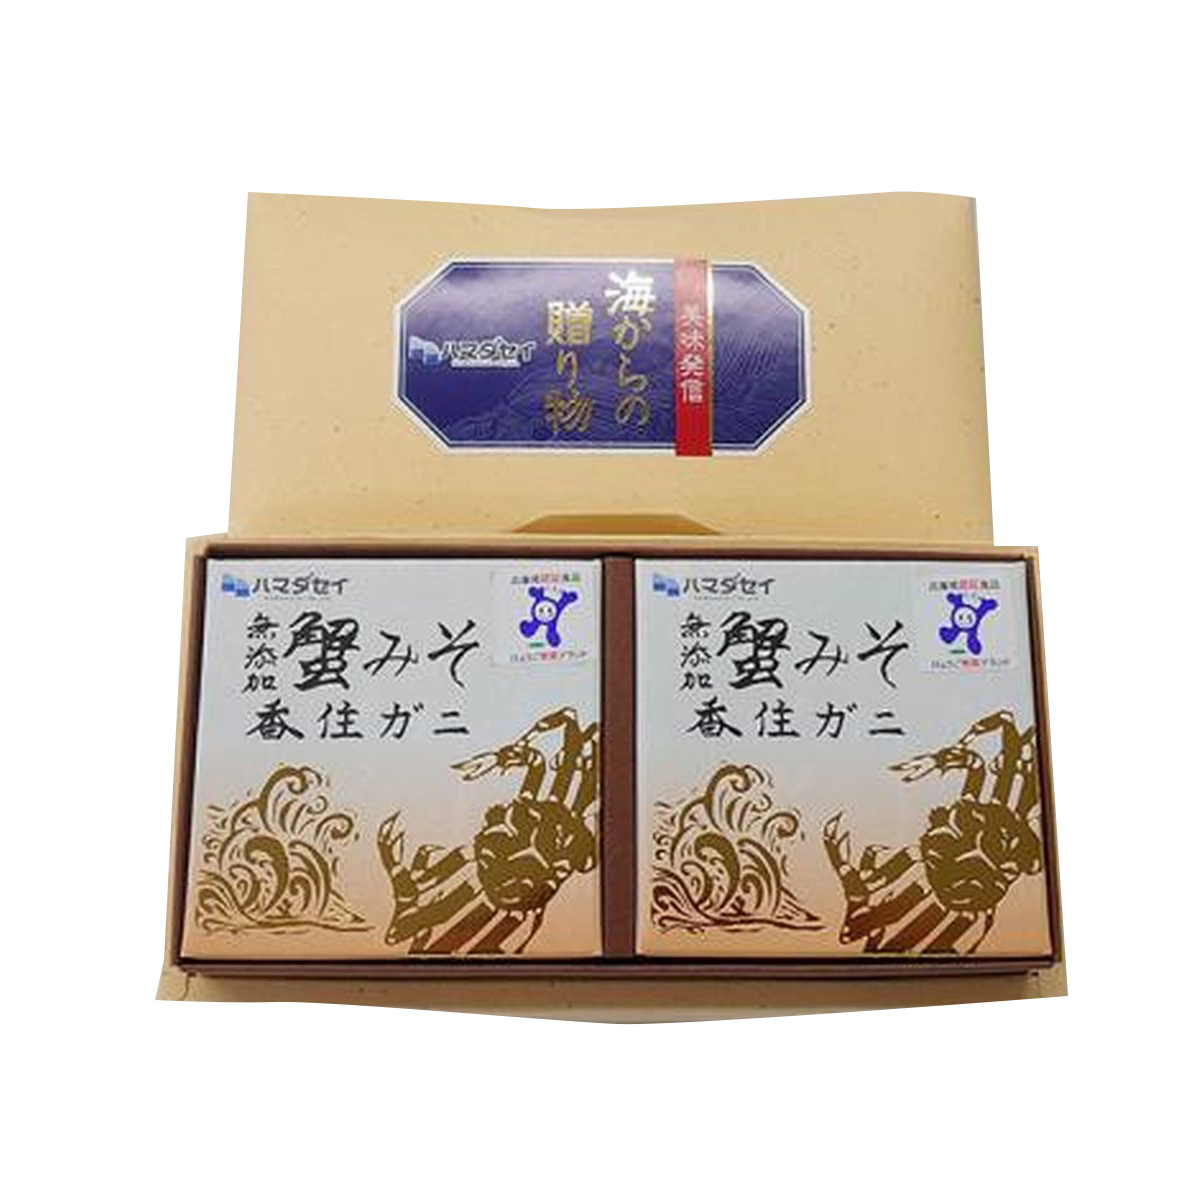 【送料無料】ハマダセイ 蟹みそ ゴールド 70g(2缶セット)